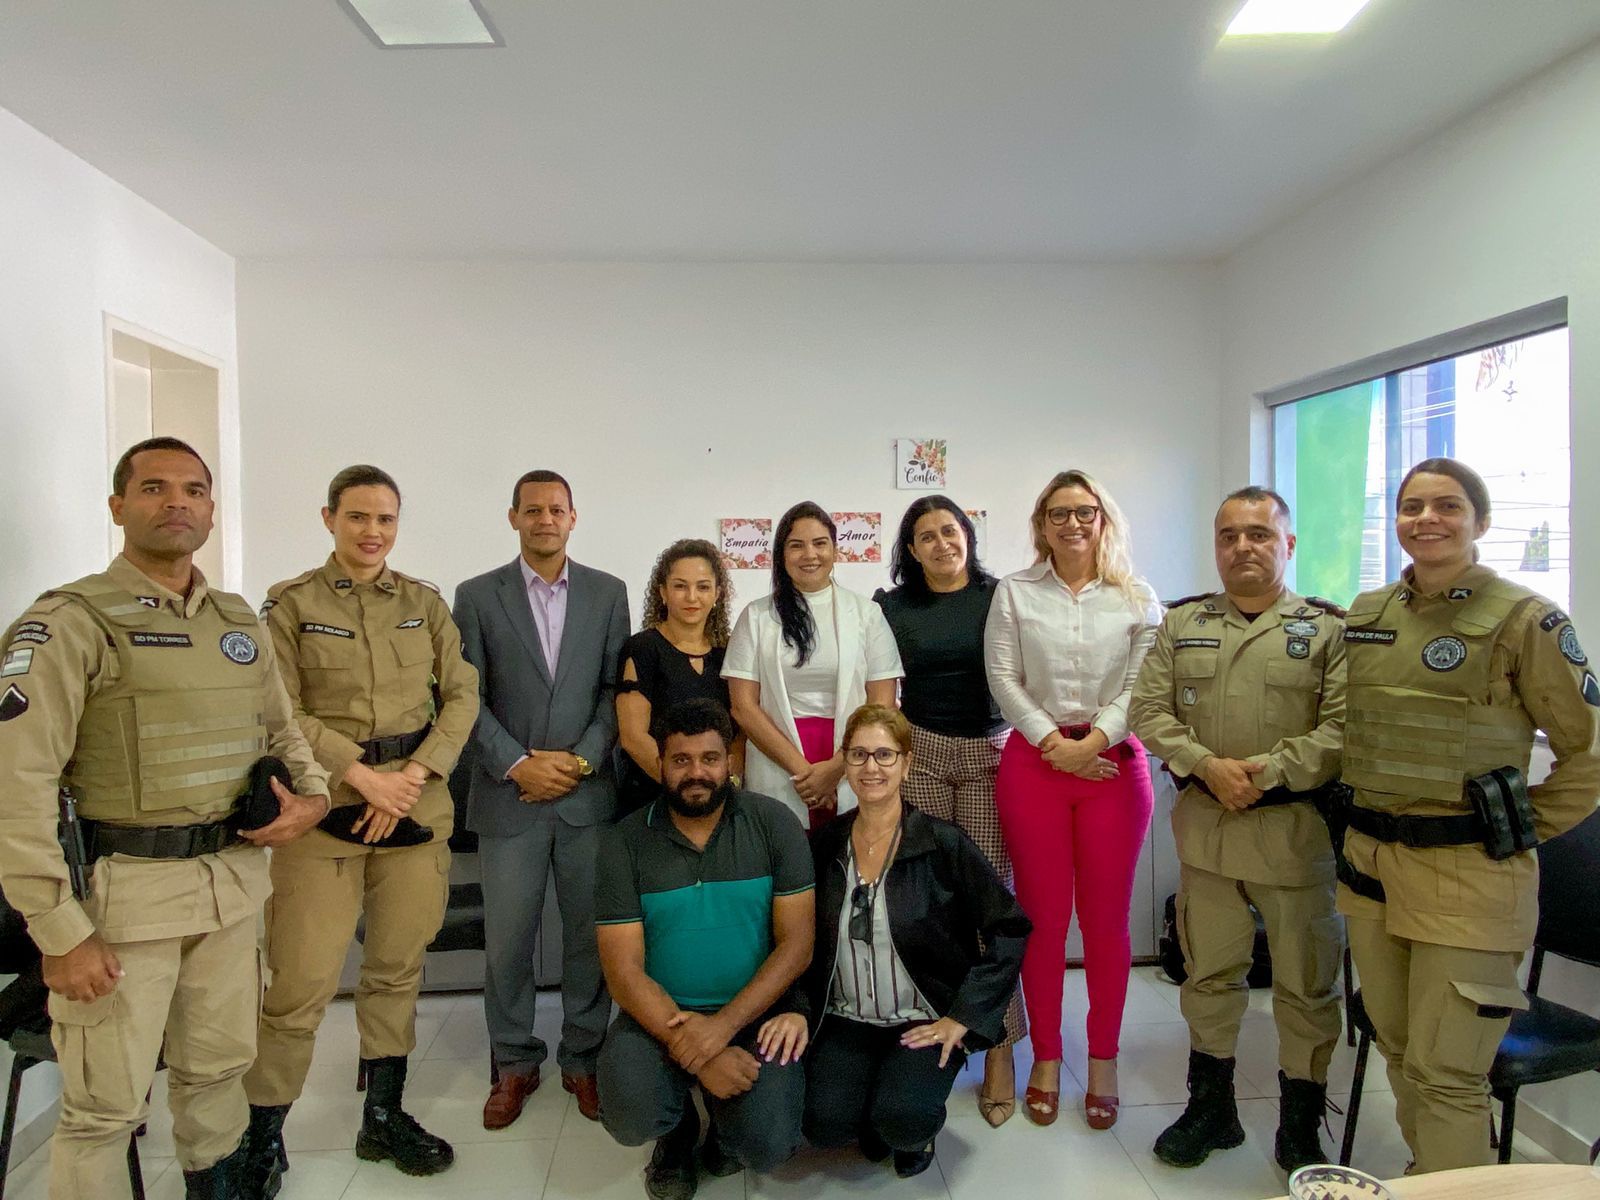 Equipe da Secretaria de Assistência Social fortalece vínculos com Polícia Militar no combate à violência doméstica em Eunápolis 10